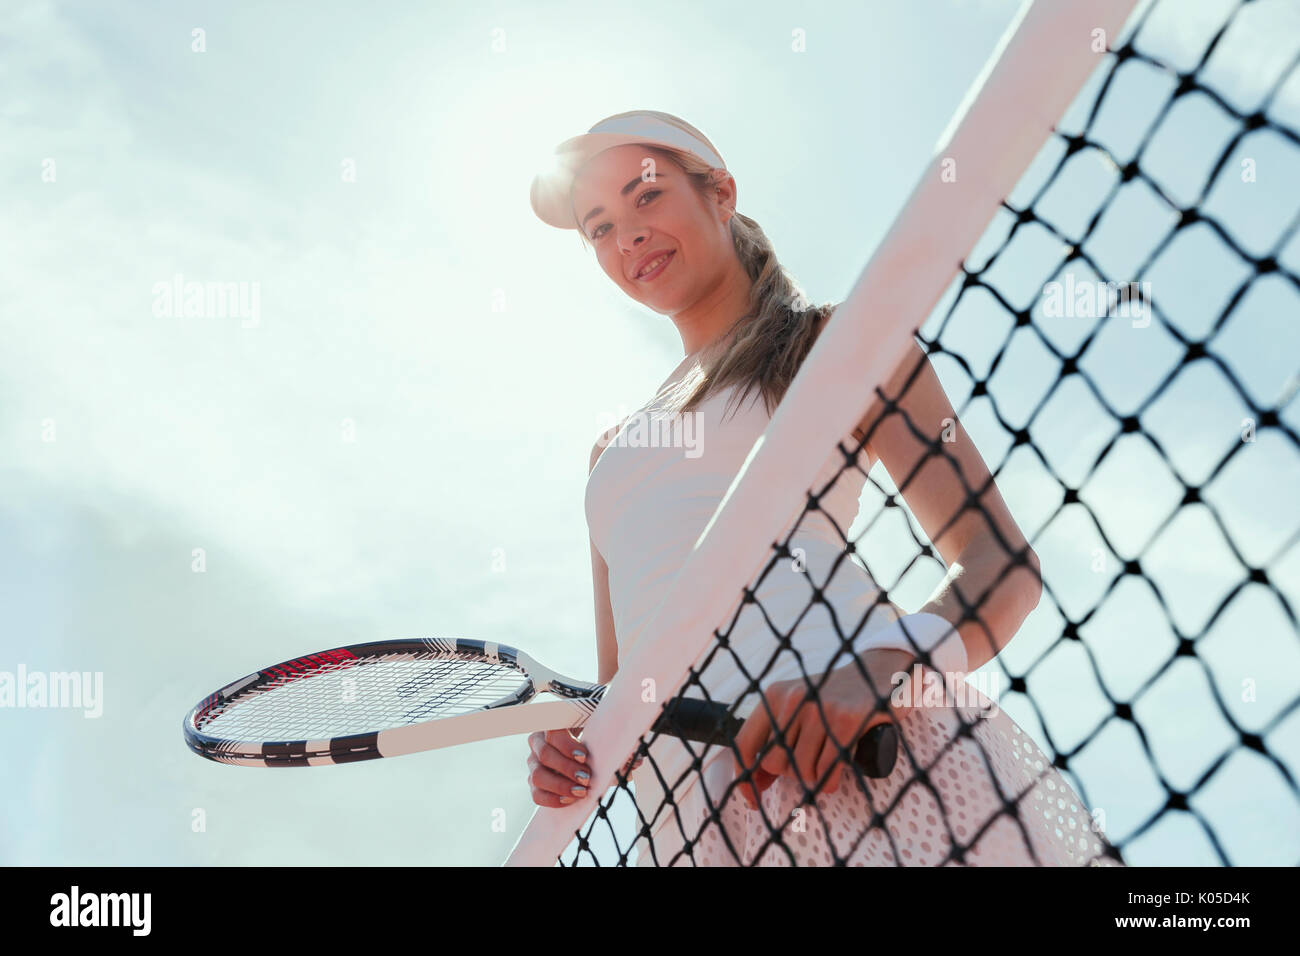 Portrait souriant, confiant tennis player holding tennis racket au filet en dessous de ciel ensoleillé Banque D'Images